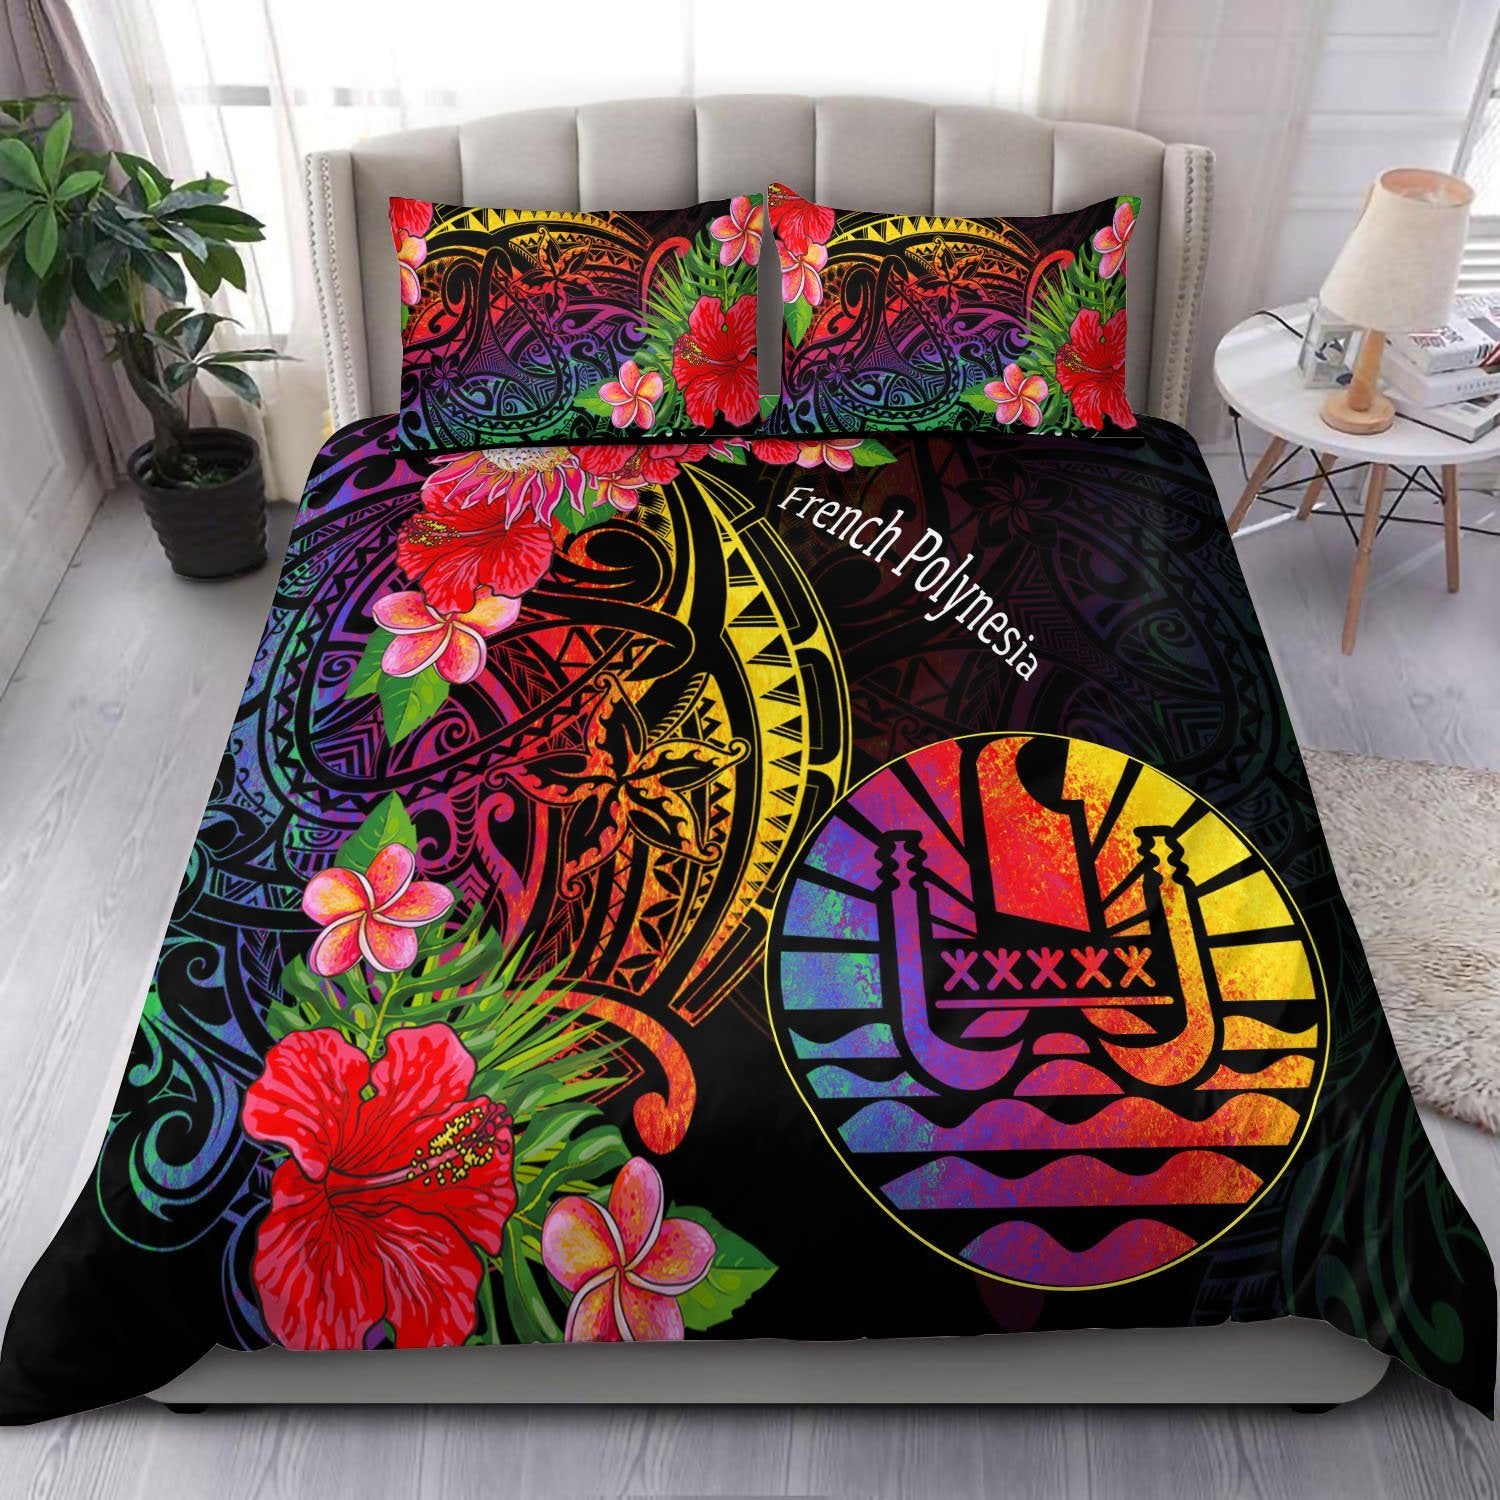 Custom French Polynesia Bedding Set - Tropical Hippie Style Black - Polynesian Pride